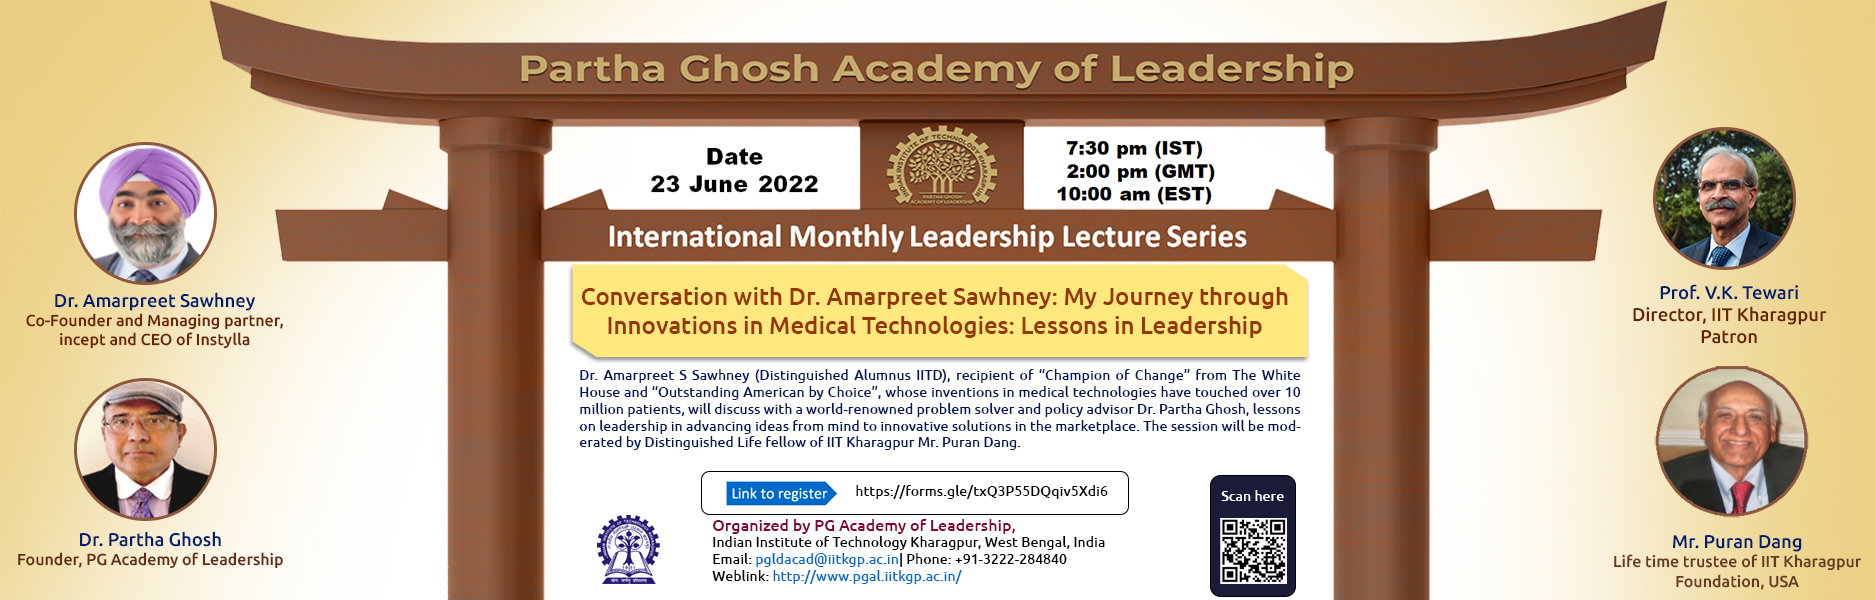 Partha Ghosh Academy 22 June 2022